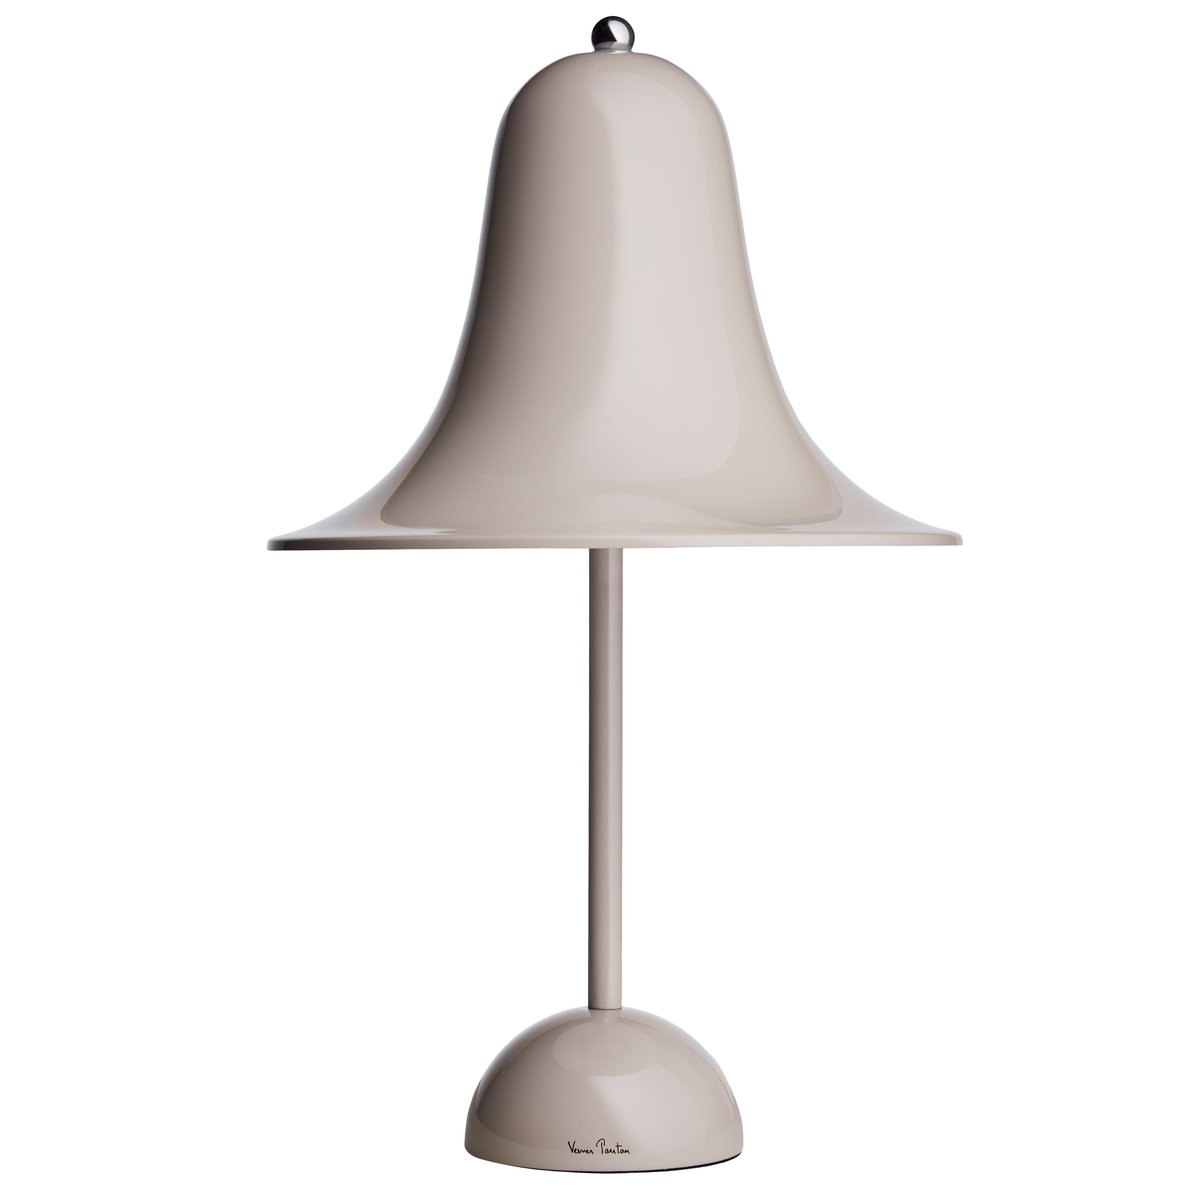 #1 på vores liste over bordlamper er Bordlampe